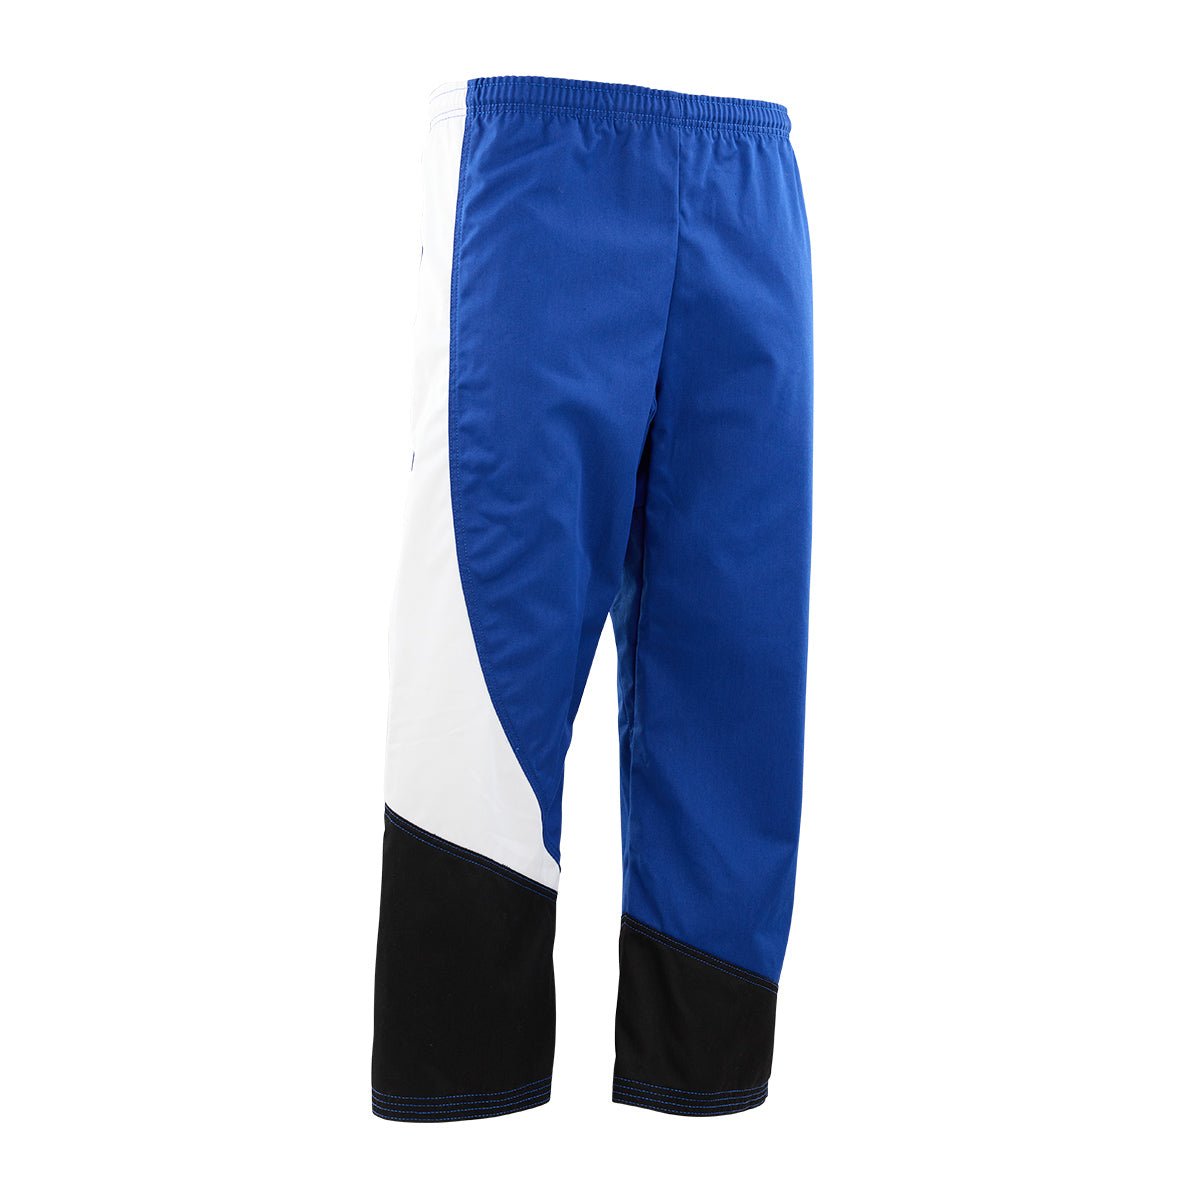 Tri-Color Diagonal Program Uniform Pants Black Blue White